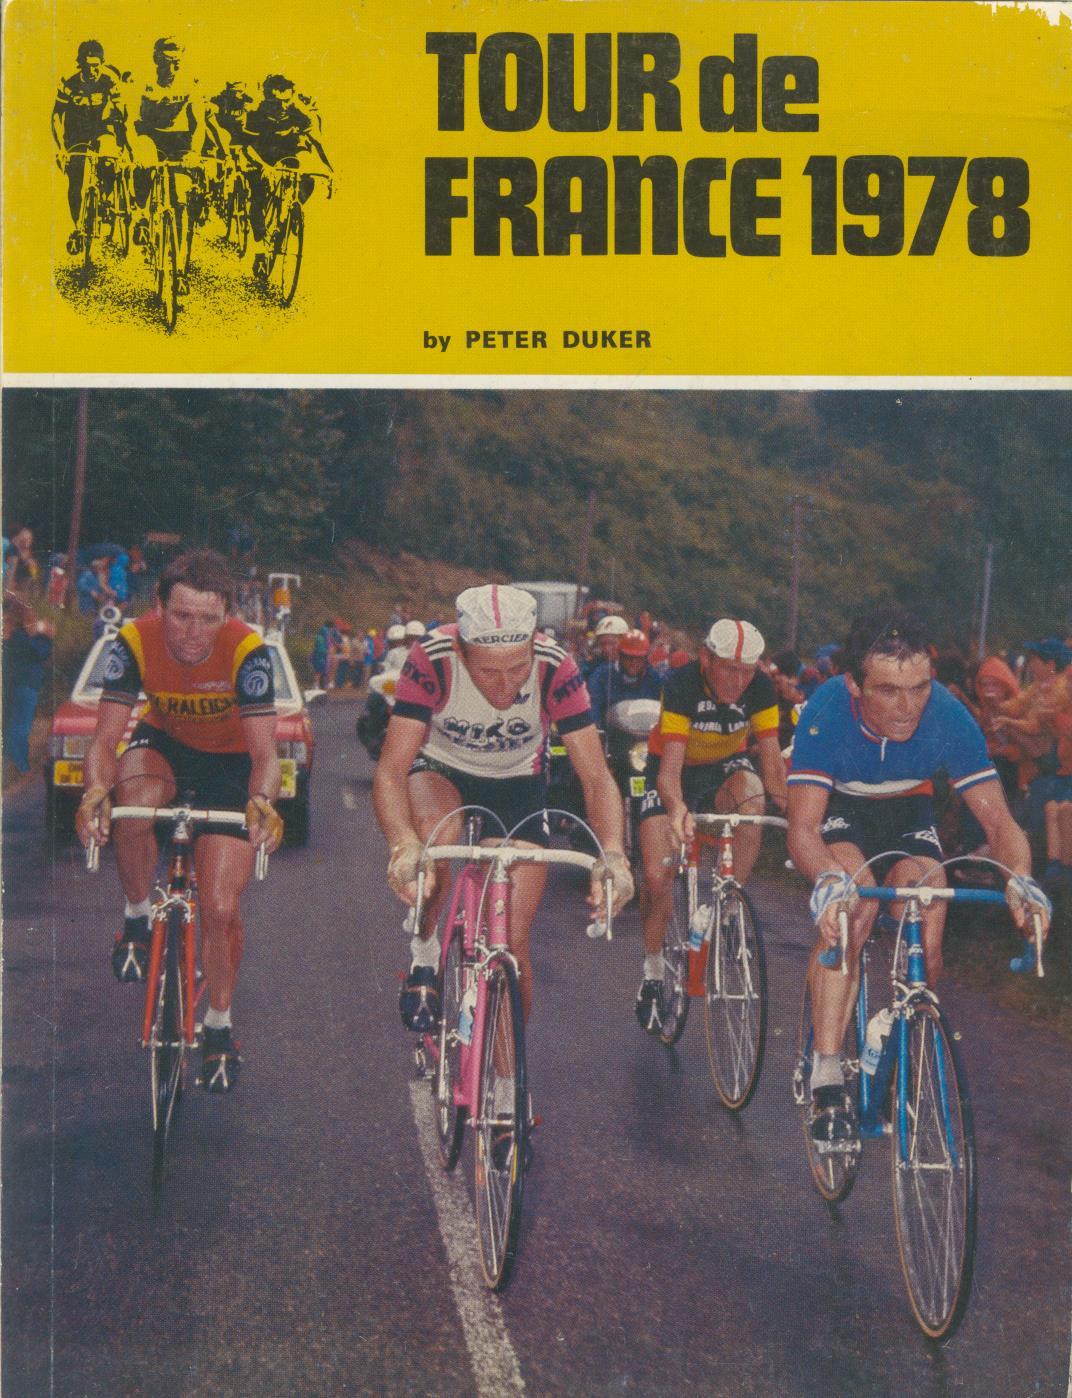 tour de france auto 1978 results